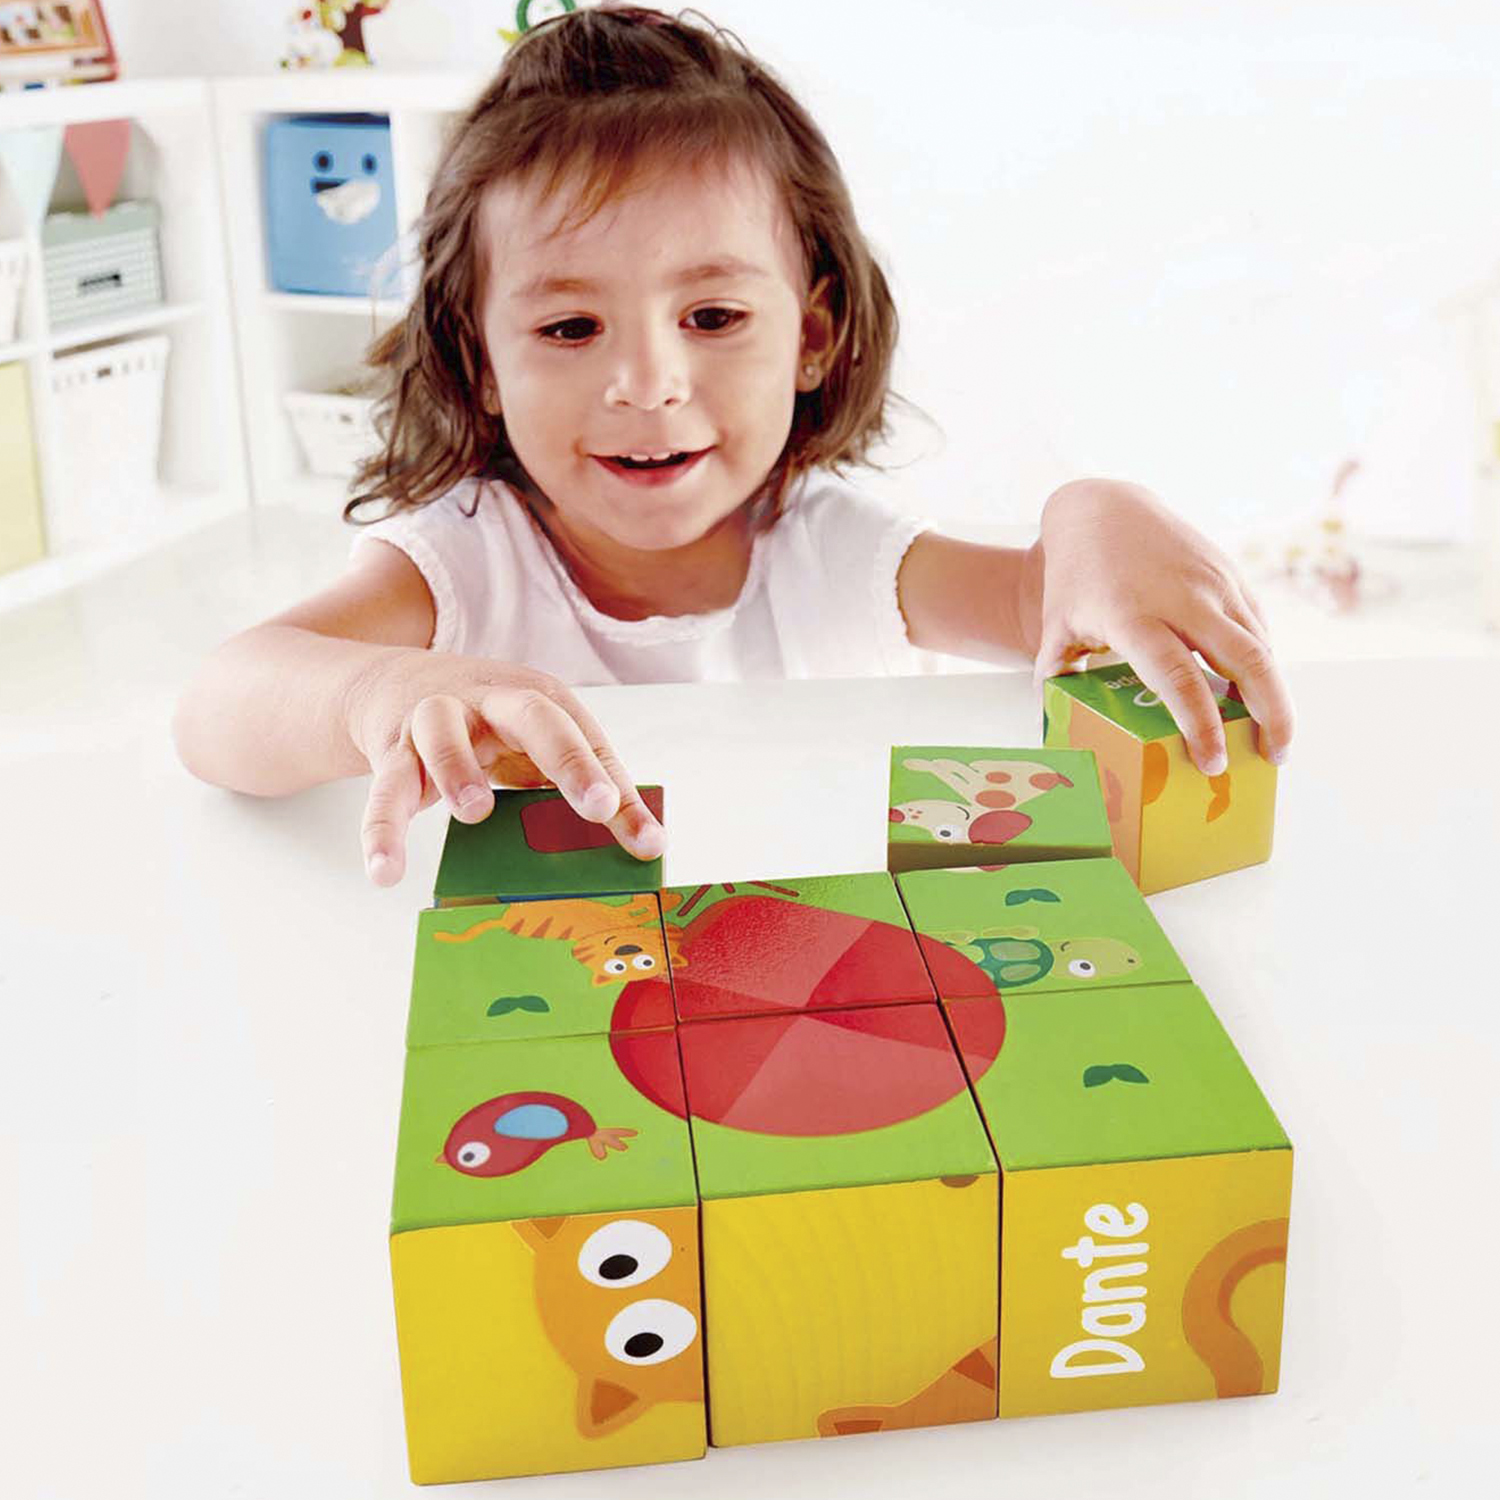 Развивающая игрушка Hape Кубики-пазлы Лили 9 элементов, 6 вариантов картинок, деревянные hape пазлы каменный век умняша